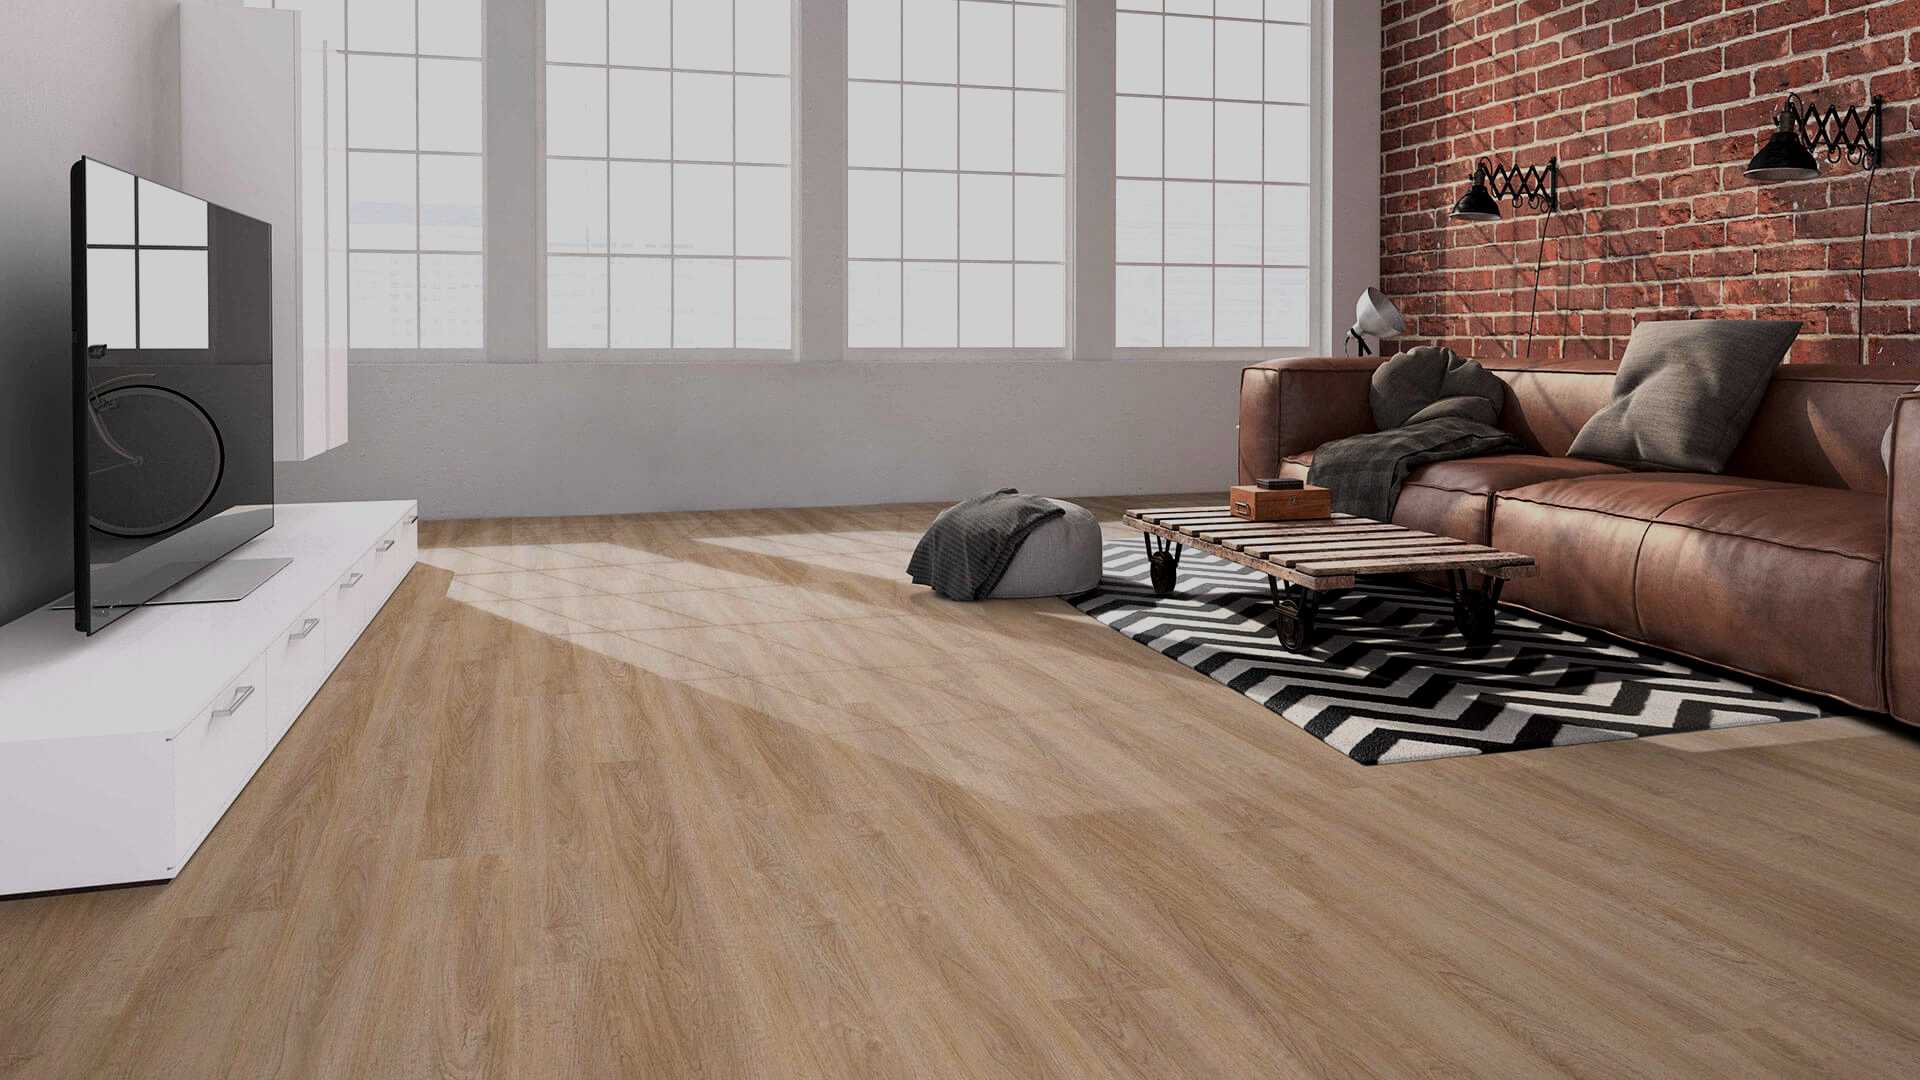 Sàn gỗ công nghiệp Charm Wood được sử dụng rộng rãi trong khu vực phòng khách, phòng ăn